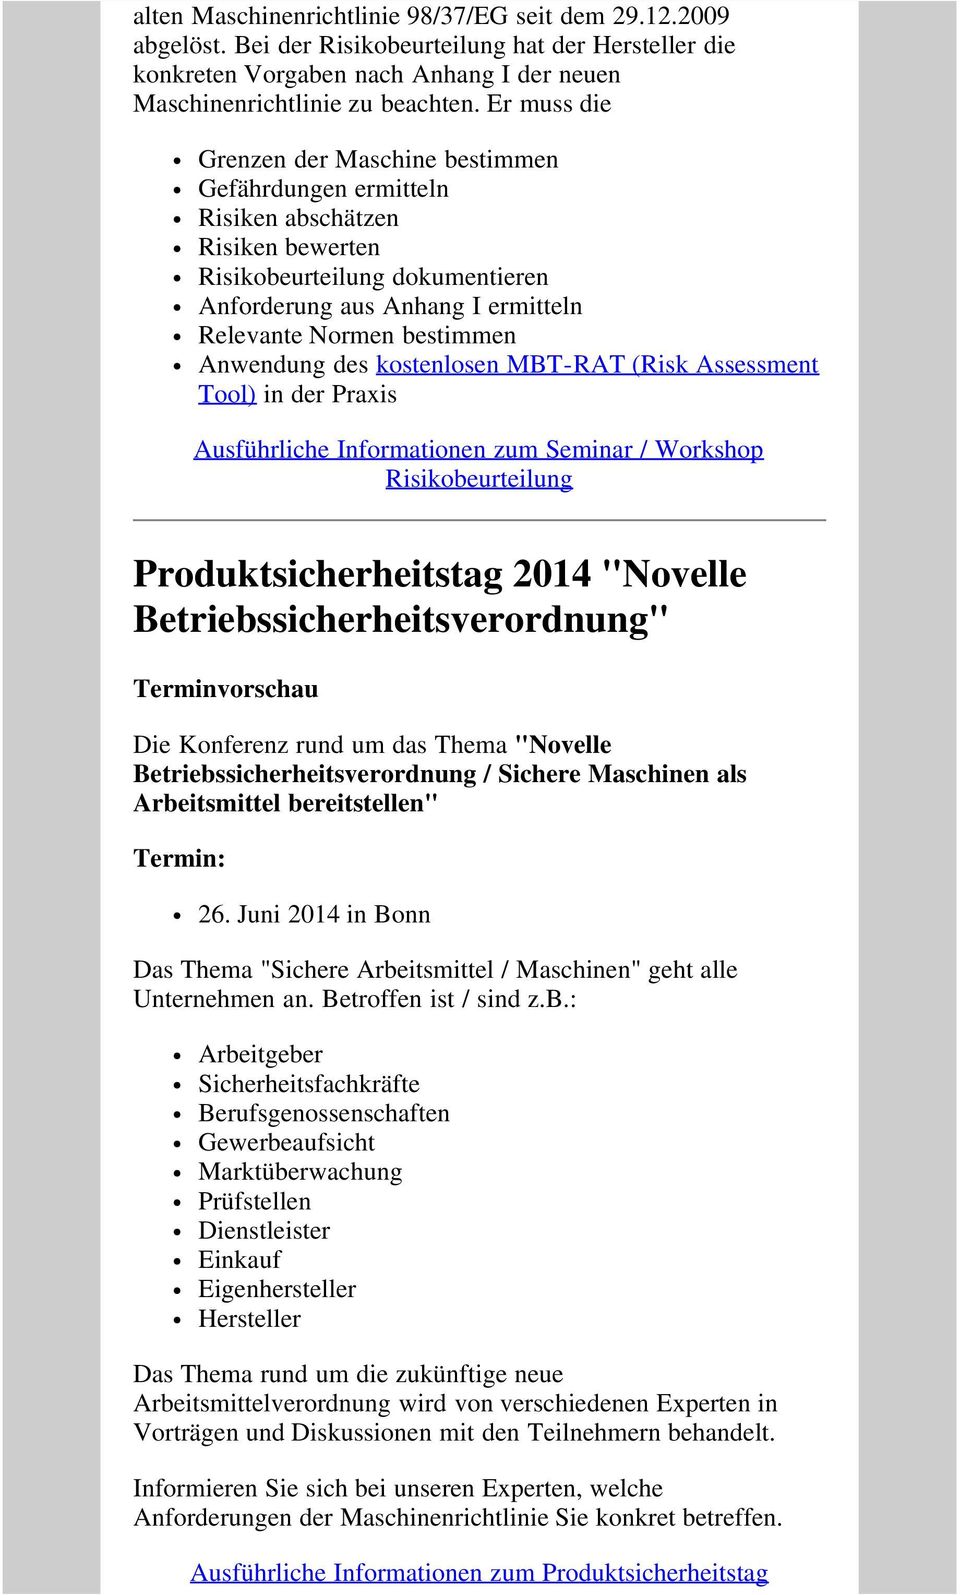 Anwendung des kostenlosen MBT-RAT (Risk Assessment Tool) in der Praxis Ausführliche Informationen zum Seminar / Workshop Risikobeurteilung Produktsicherheitstag 2014 "Novelle